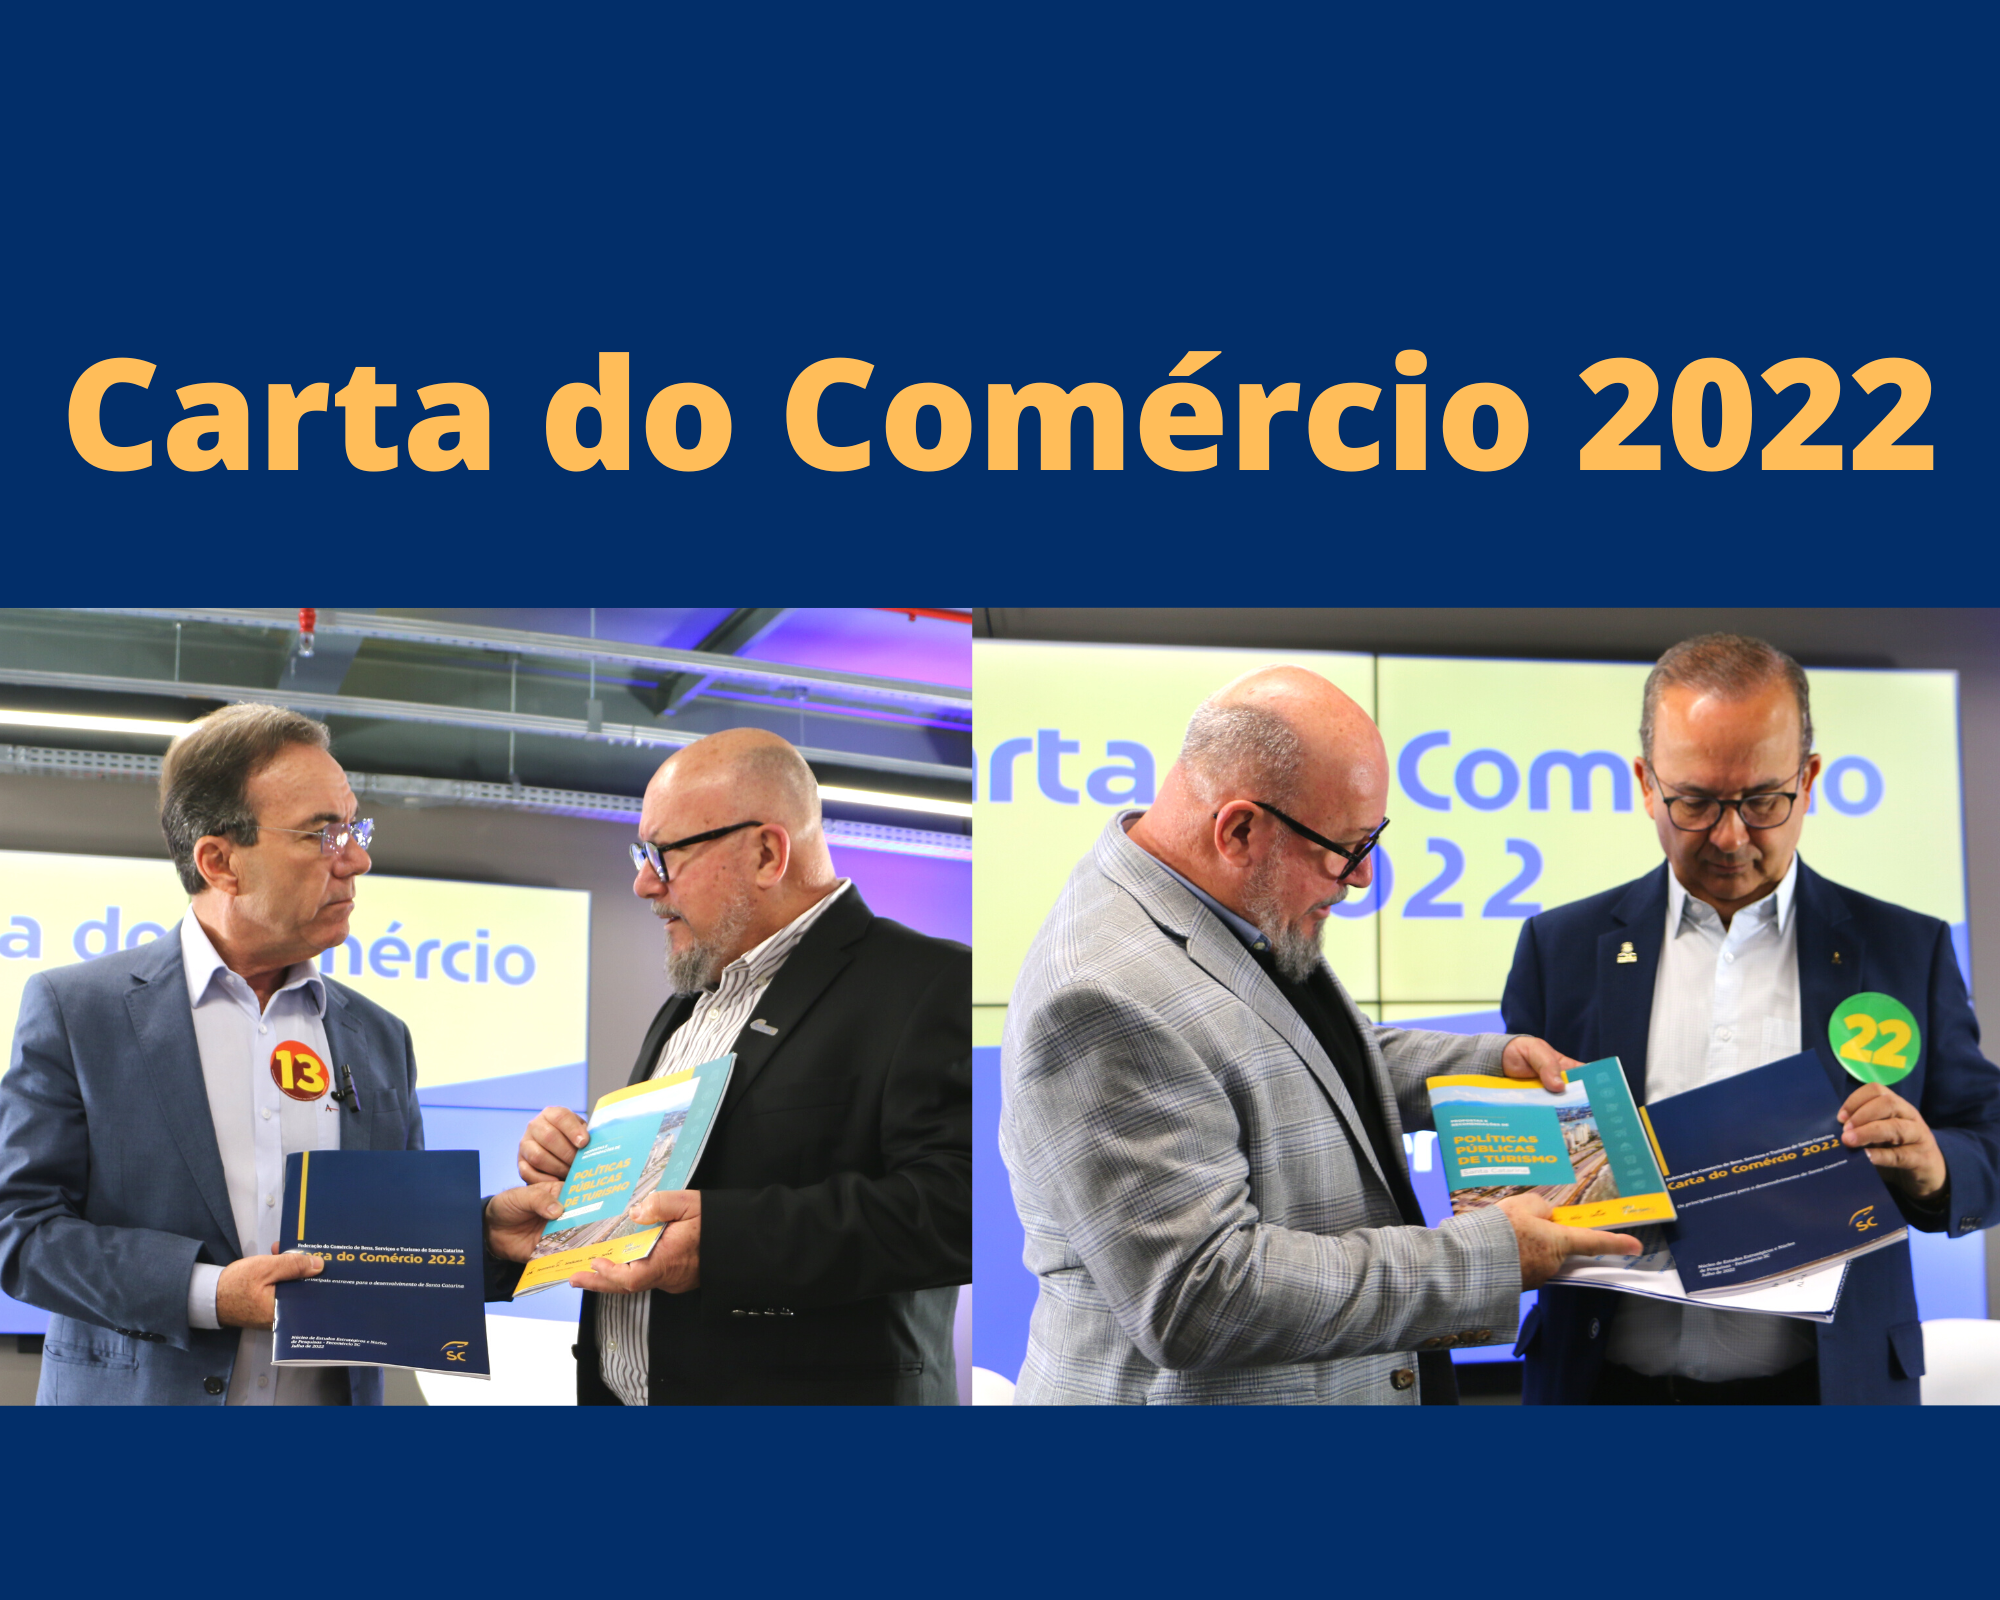 Carta do Comercio 2022 1 - Carta do Comércio 2022: assista às entrevistas com Décio Lima e Jorginho Mello, candidatos no segundo turno em SC